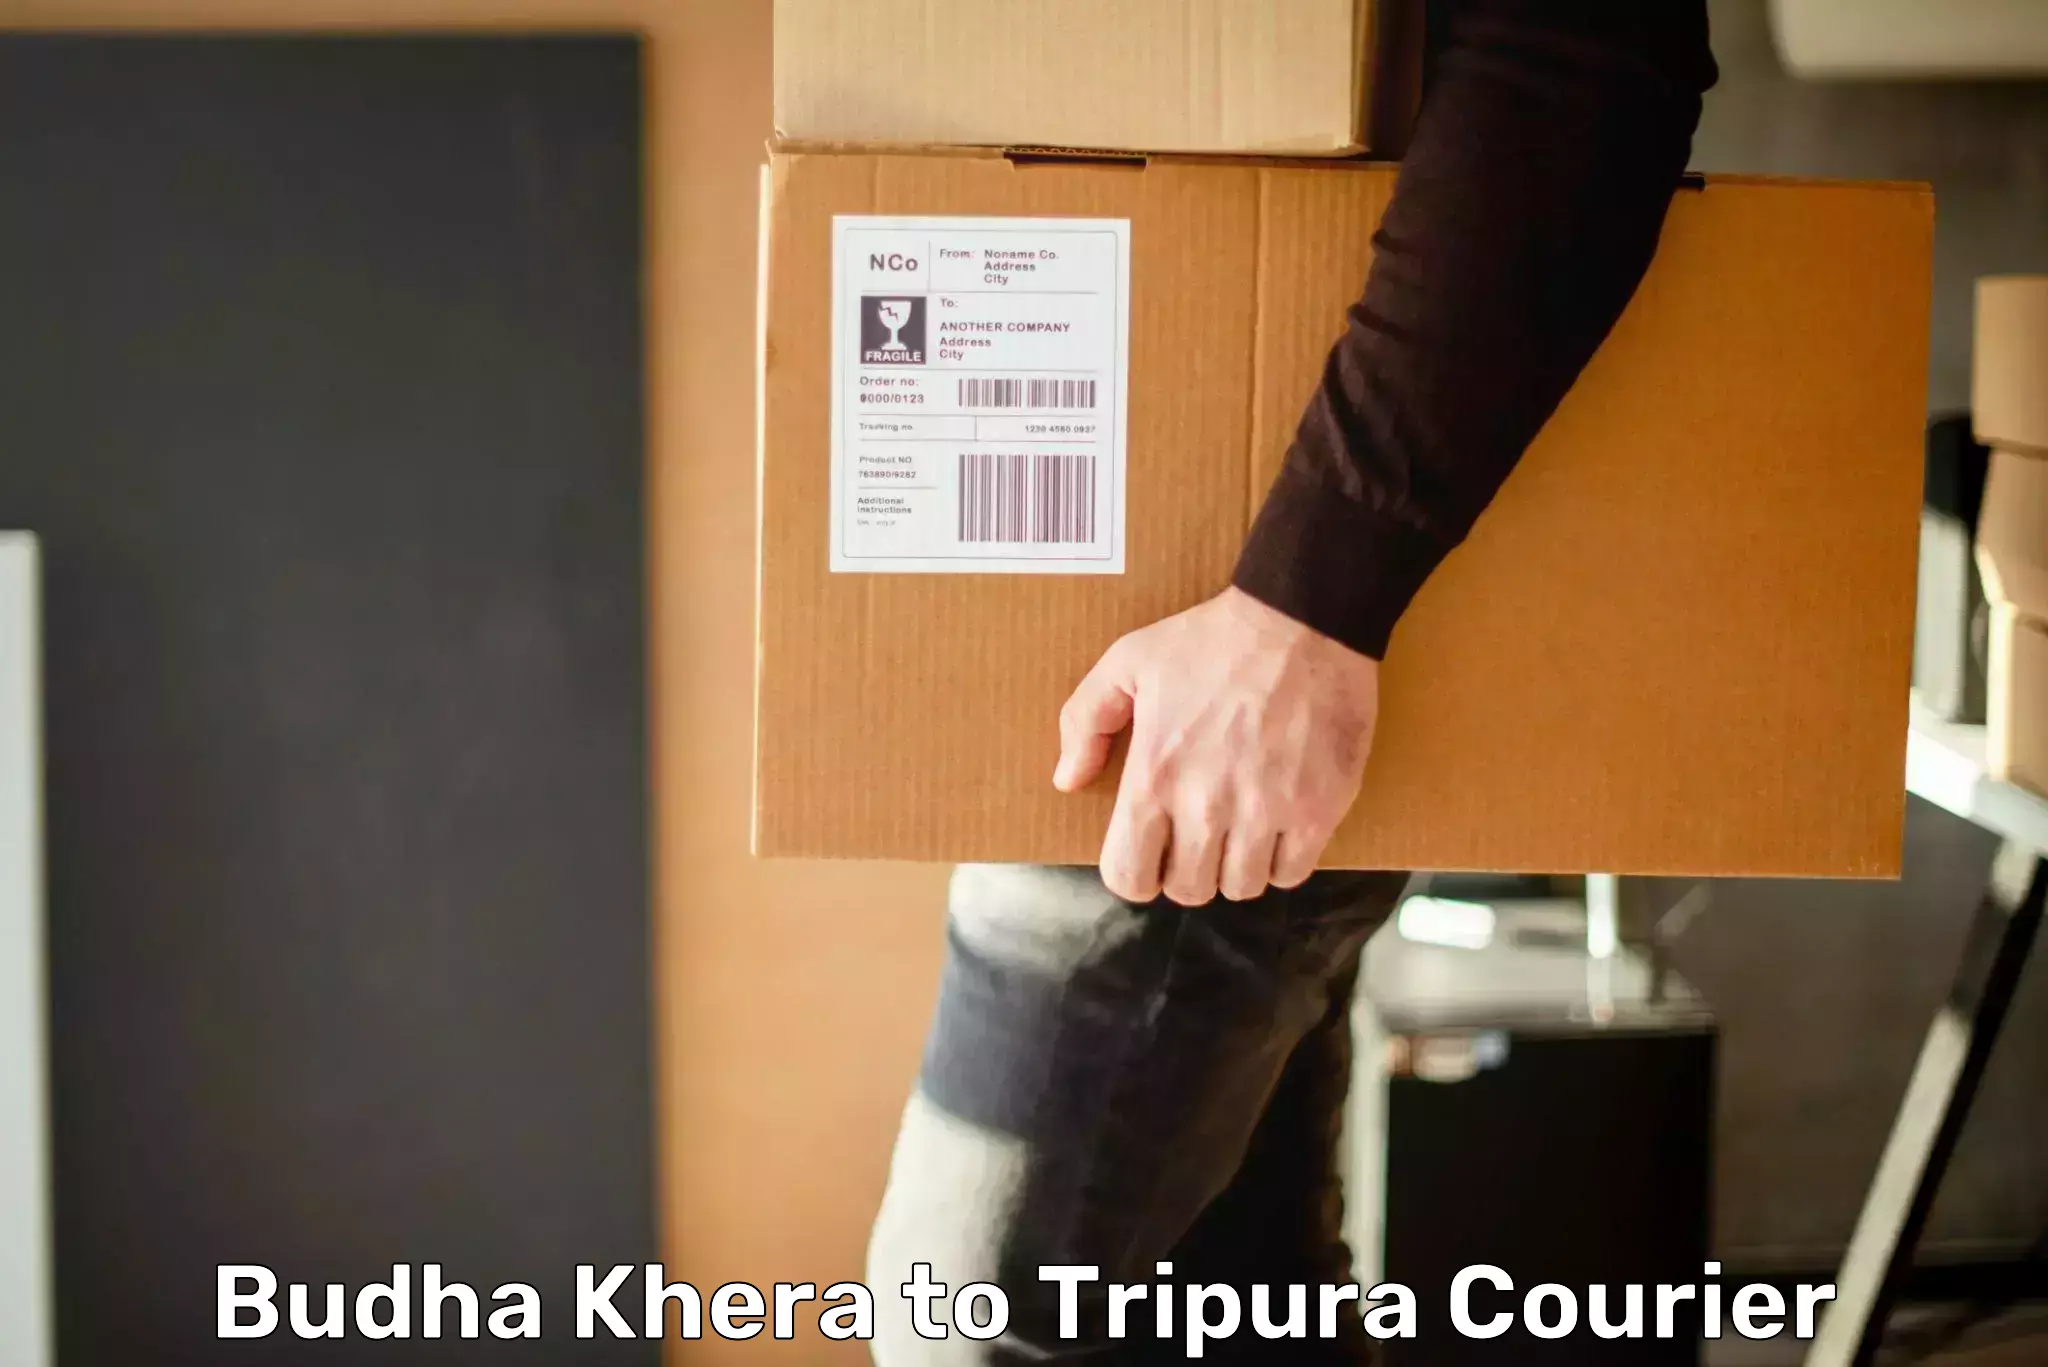 Express logistics providers Budha Khera to Kailashahar